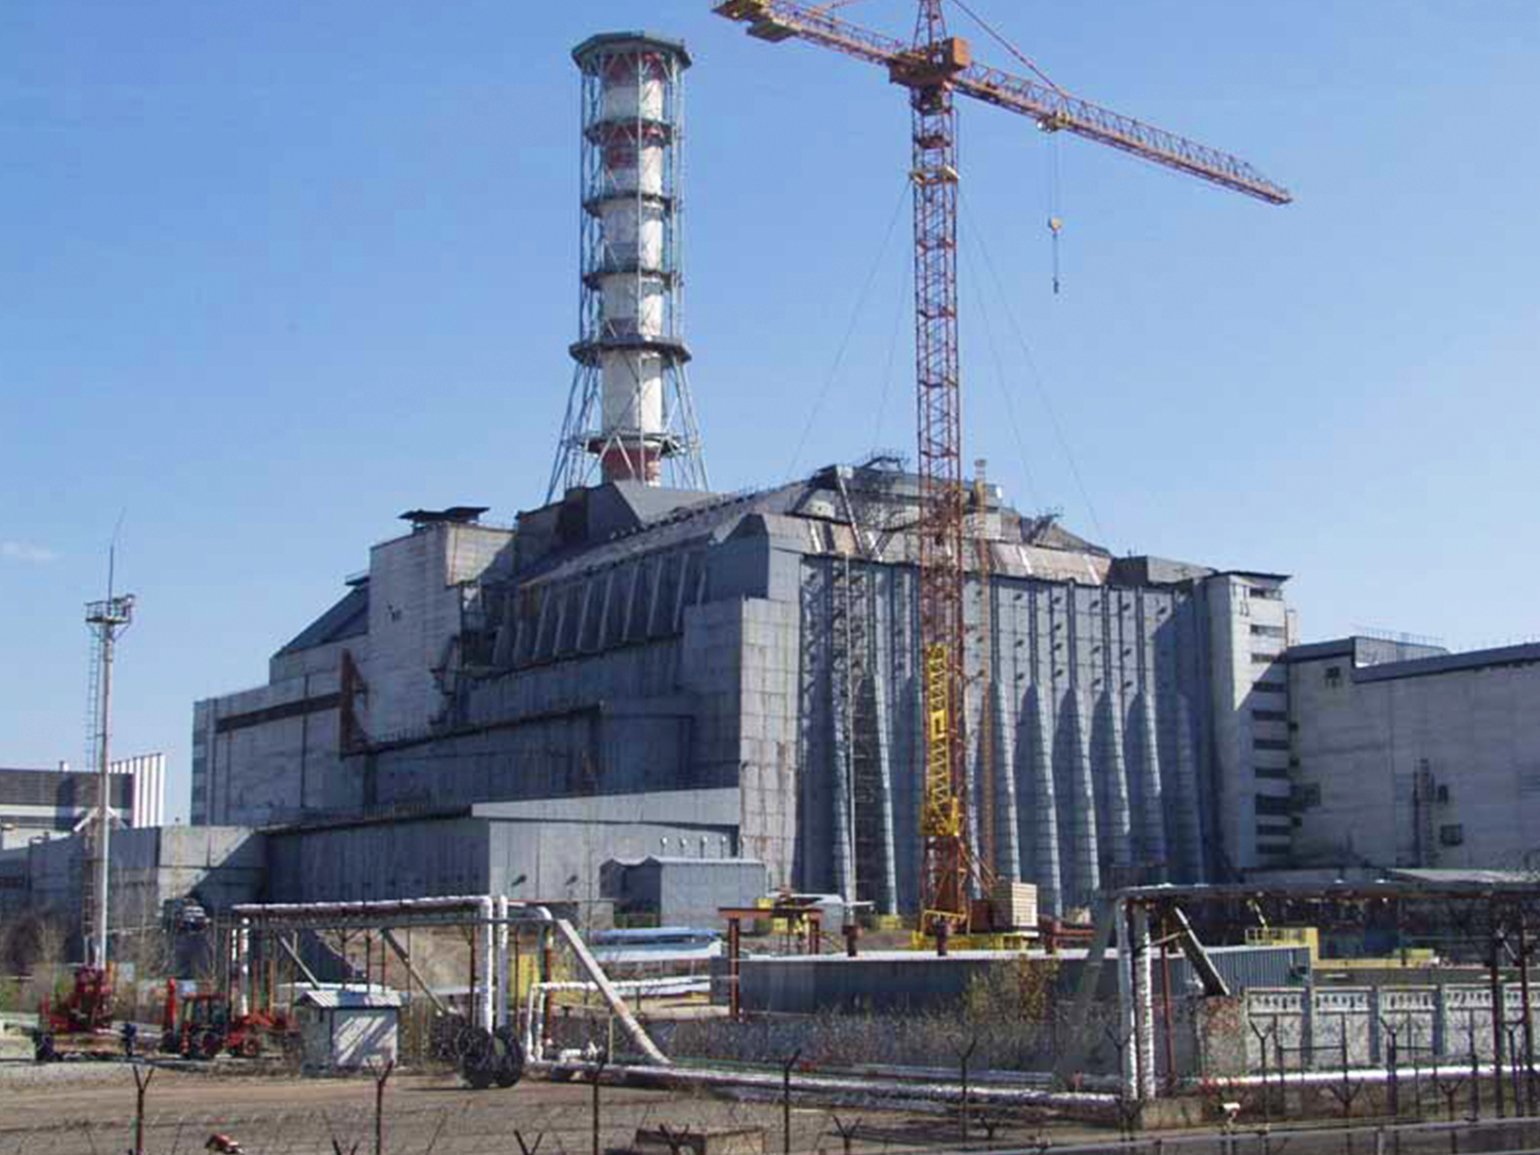 Чернобыльская атомная электростанция. Атомная электростанция Чернобыль саркофаг. АЭС Припять 4 энергоблок. Припять станция АЭС. Чернобыль саркофаг 1986.